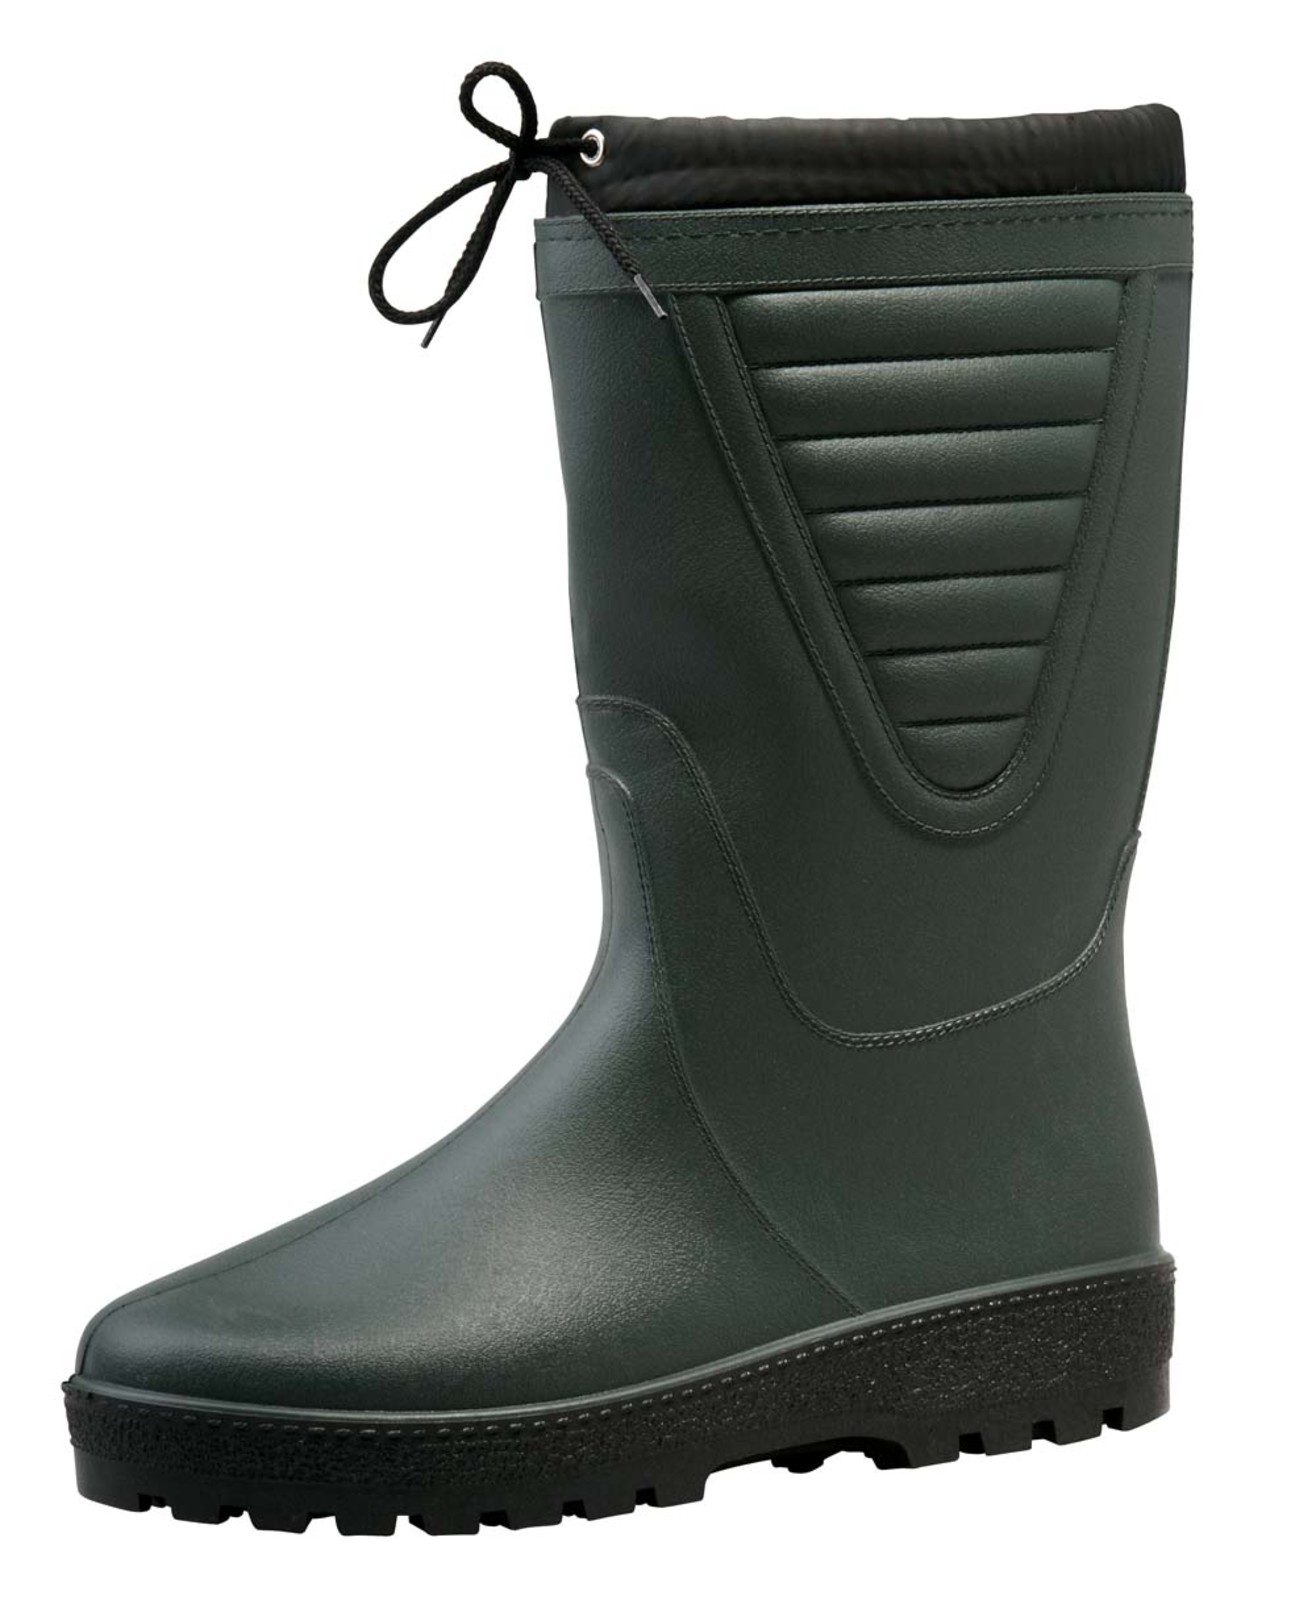 Zateplené čižmy Boots Polar - veľkosť: 38, farba: zelená